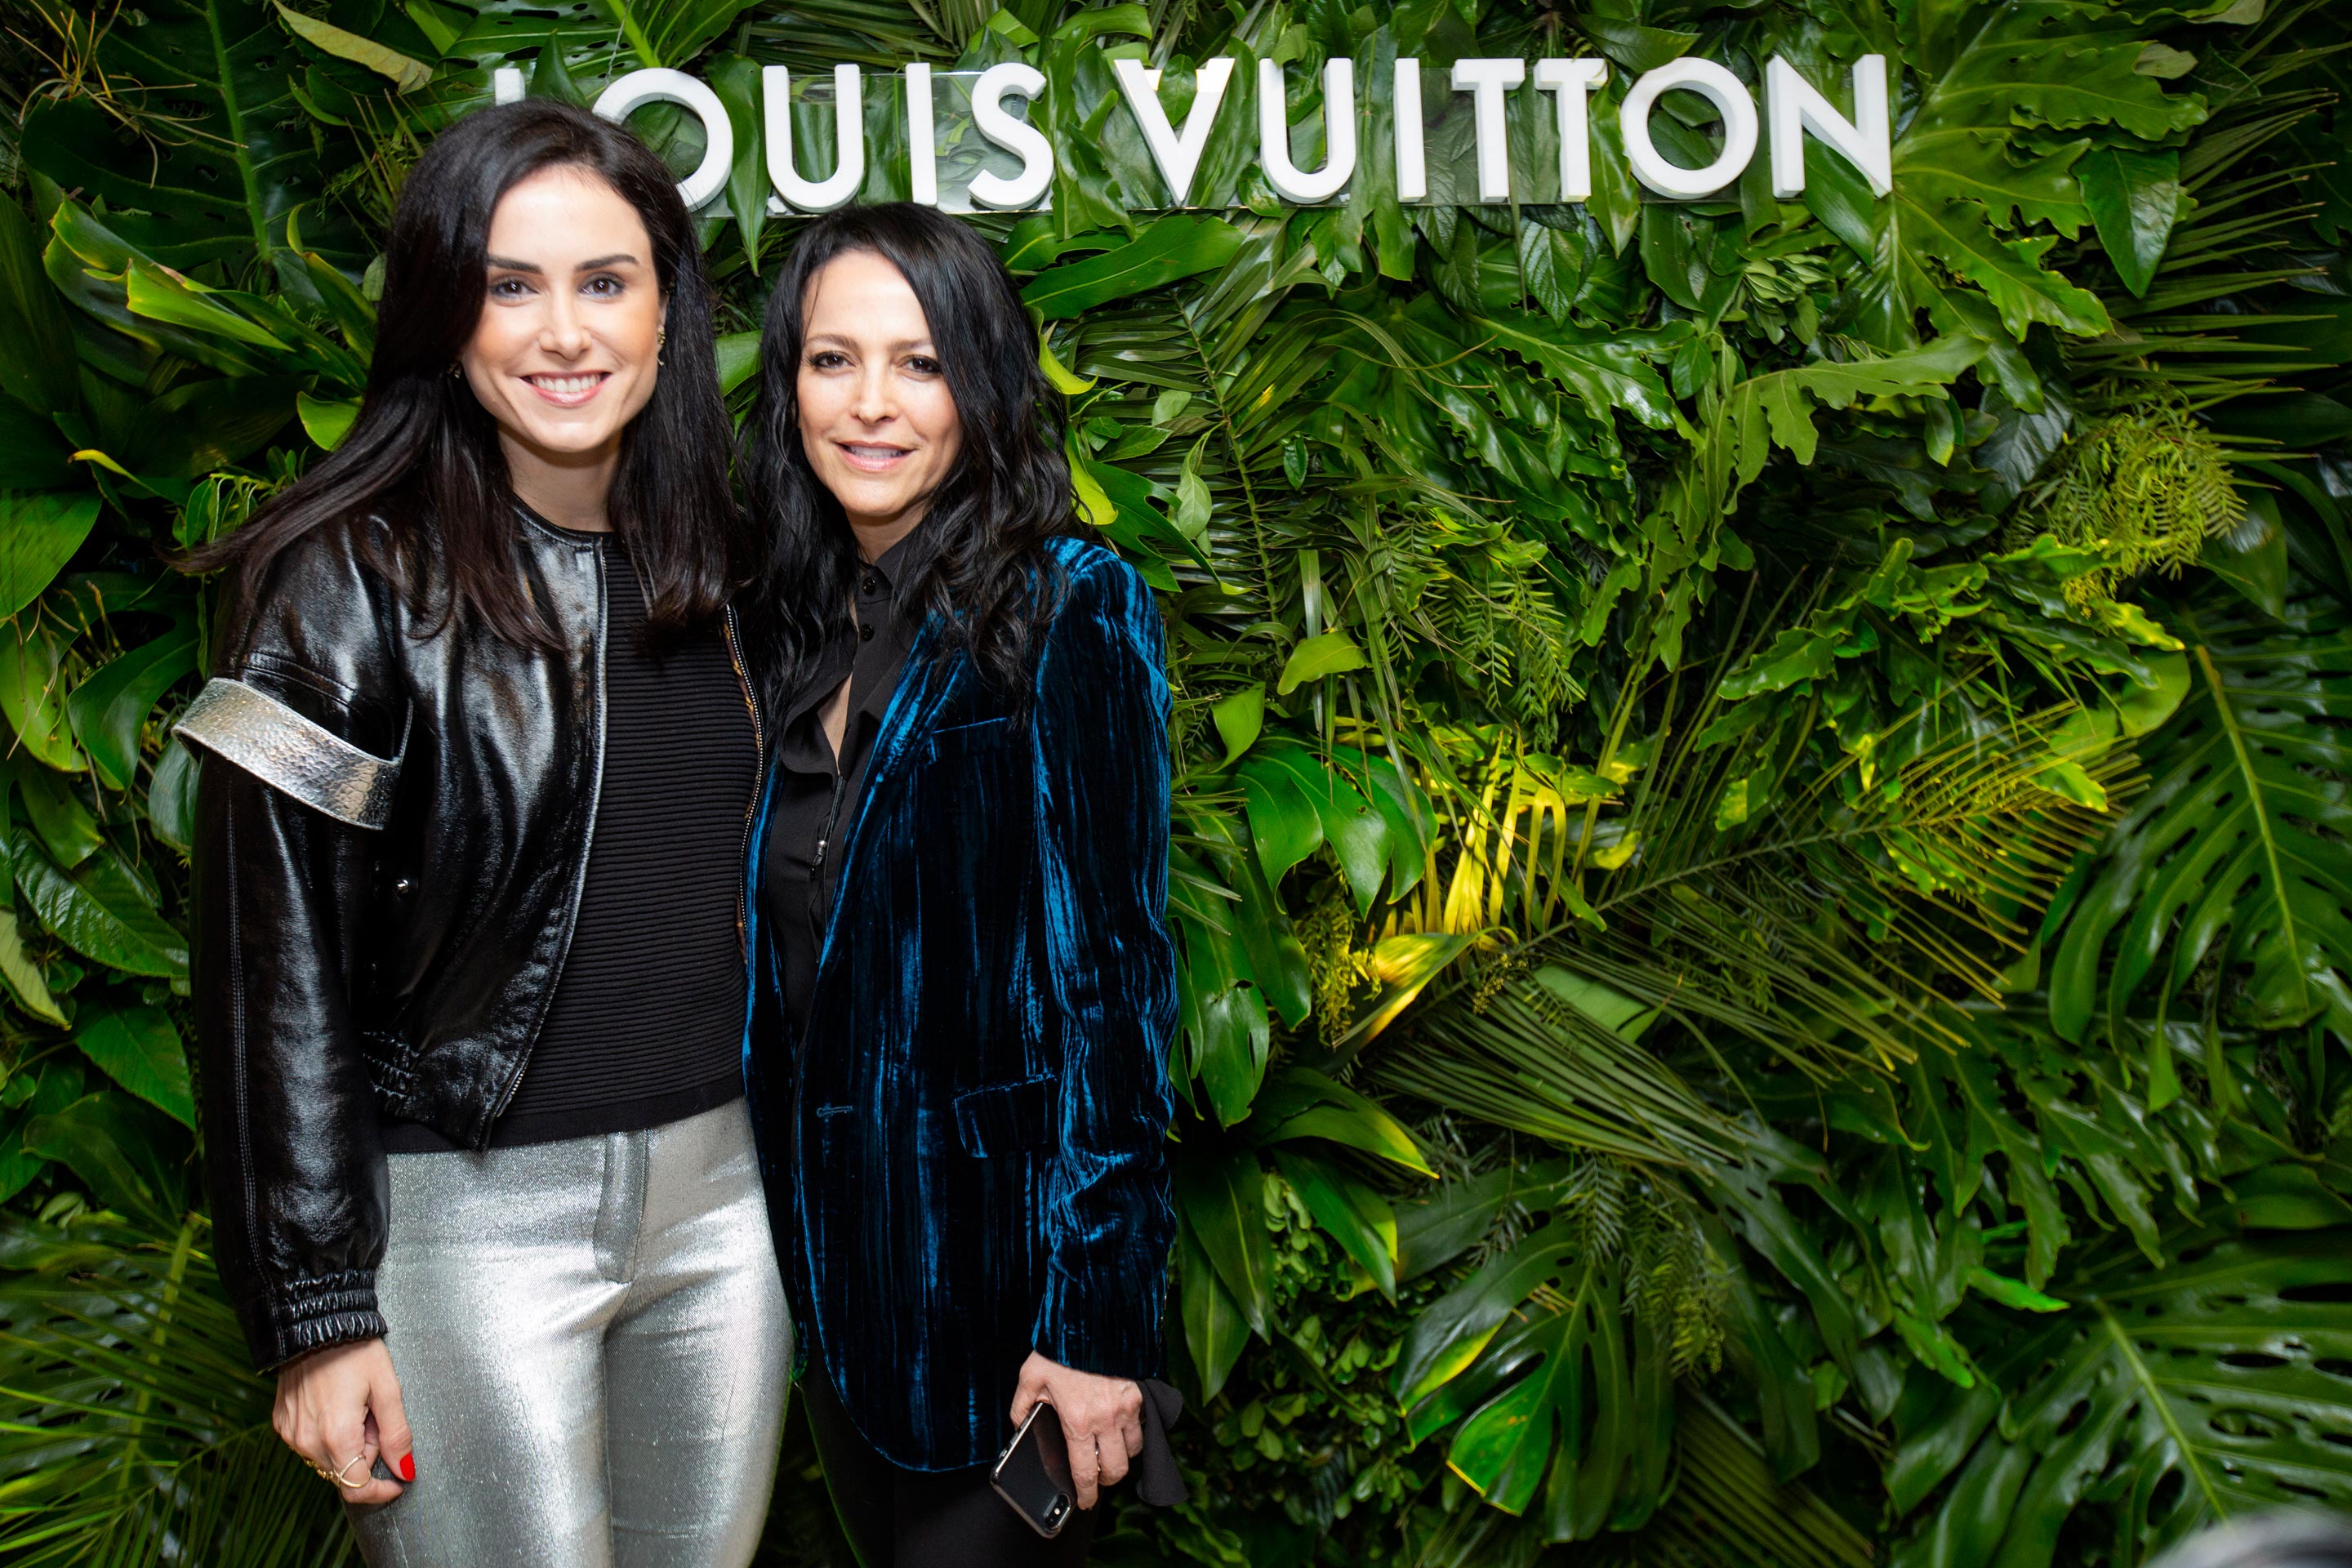 El Lujo vuelve a Argentina: Louis Vuitton abre su primer pop up